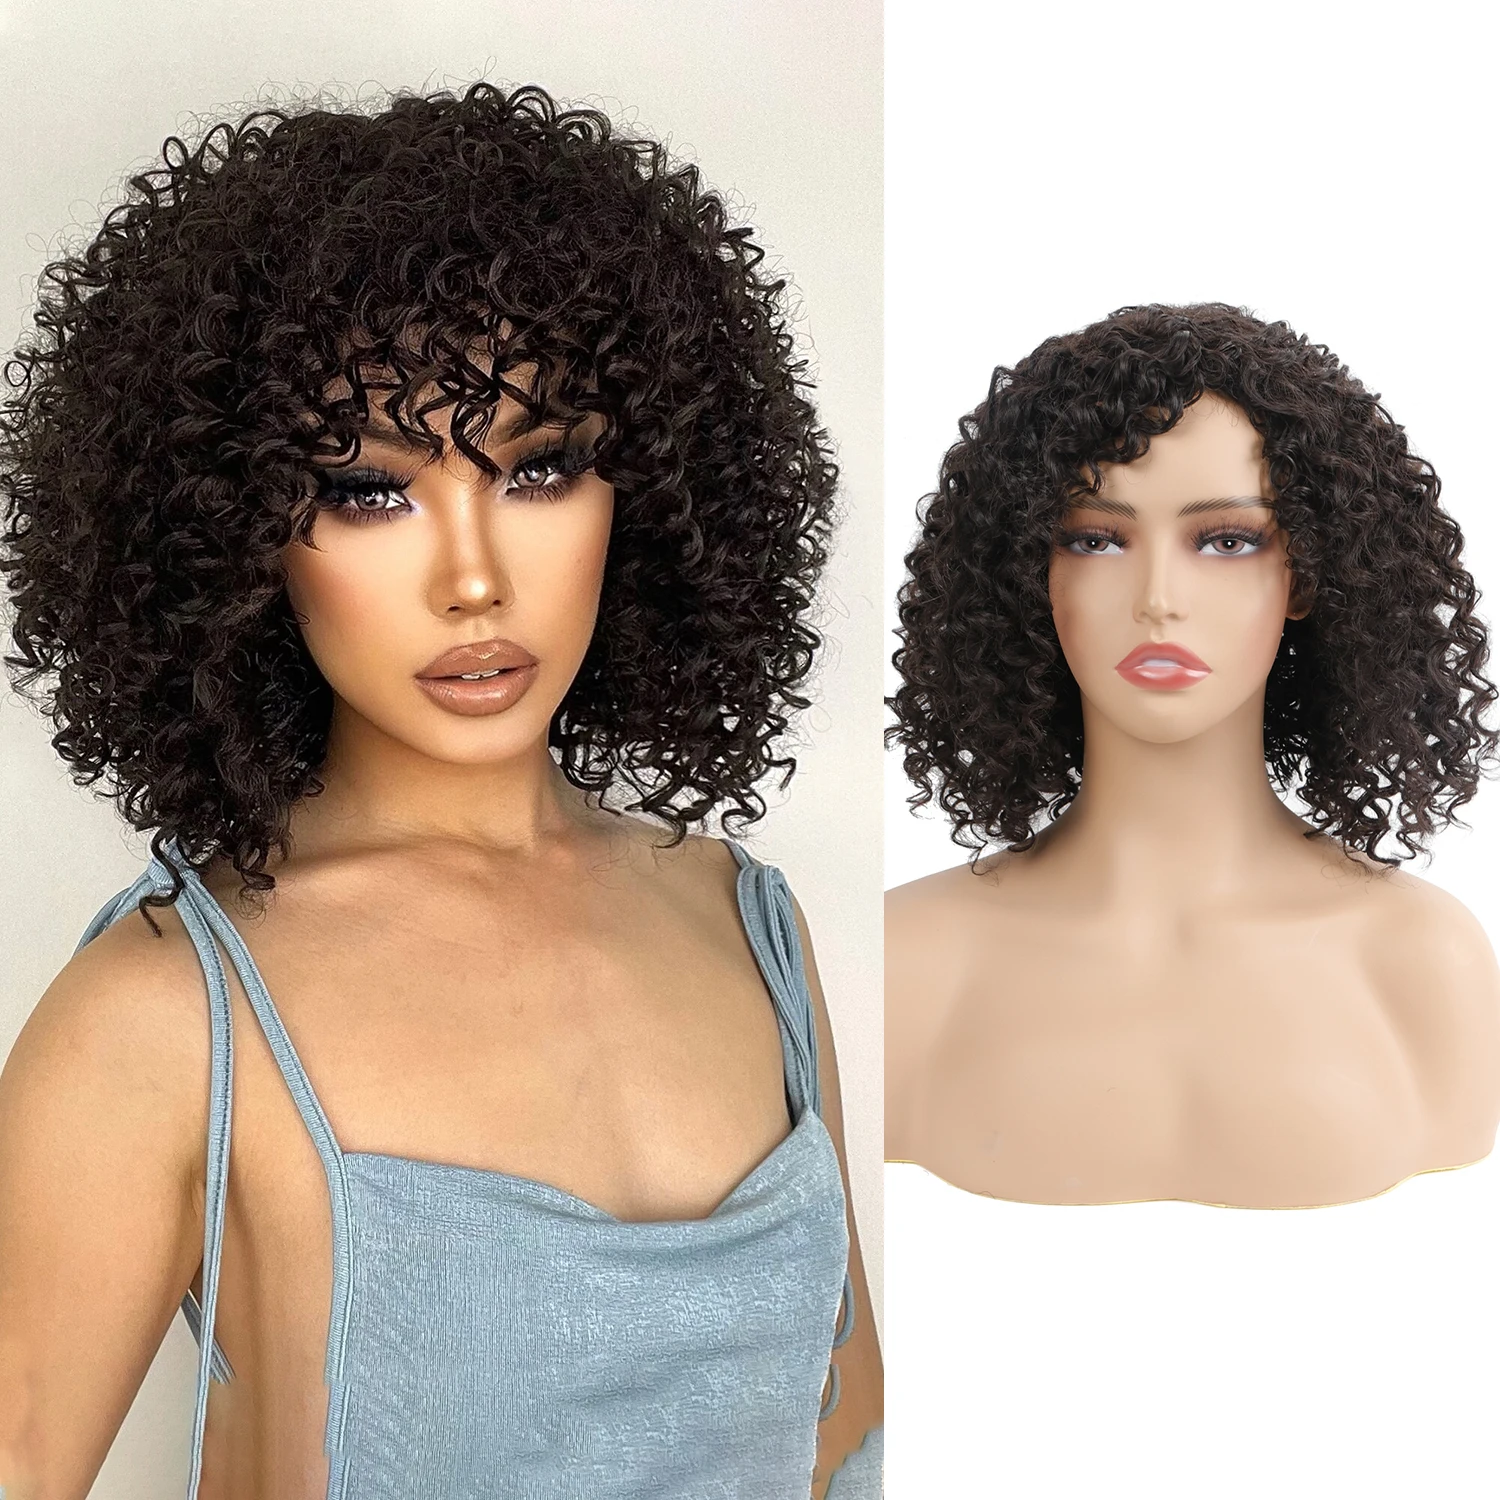 

Черный кудрявый афро парик со звездой и челкой для женщин, короткие кудрявые вьющиеся парики, для ежедневного использования, синтетическое волокно, мягкие волосы, 8 дюймов, 300 г